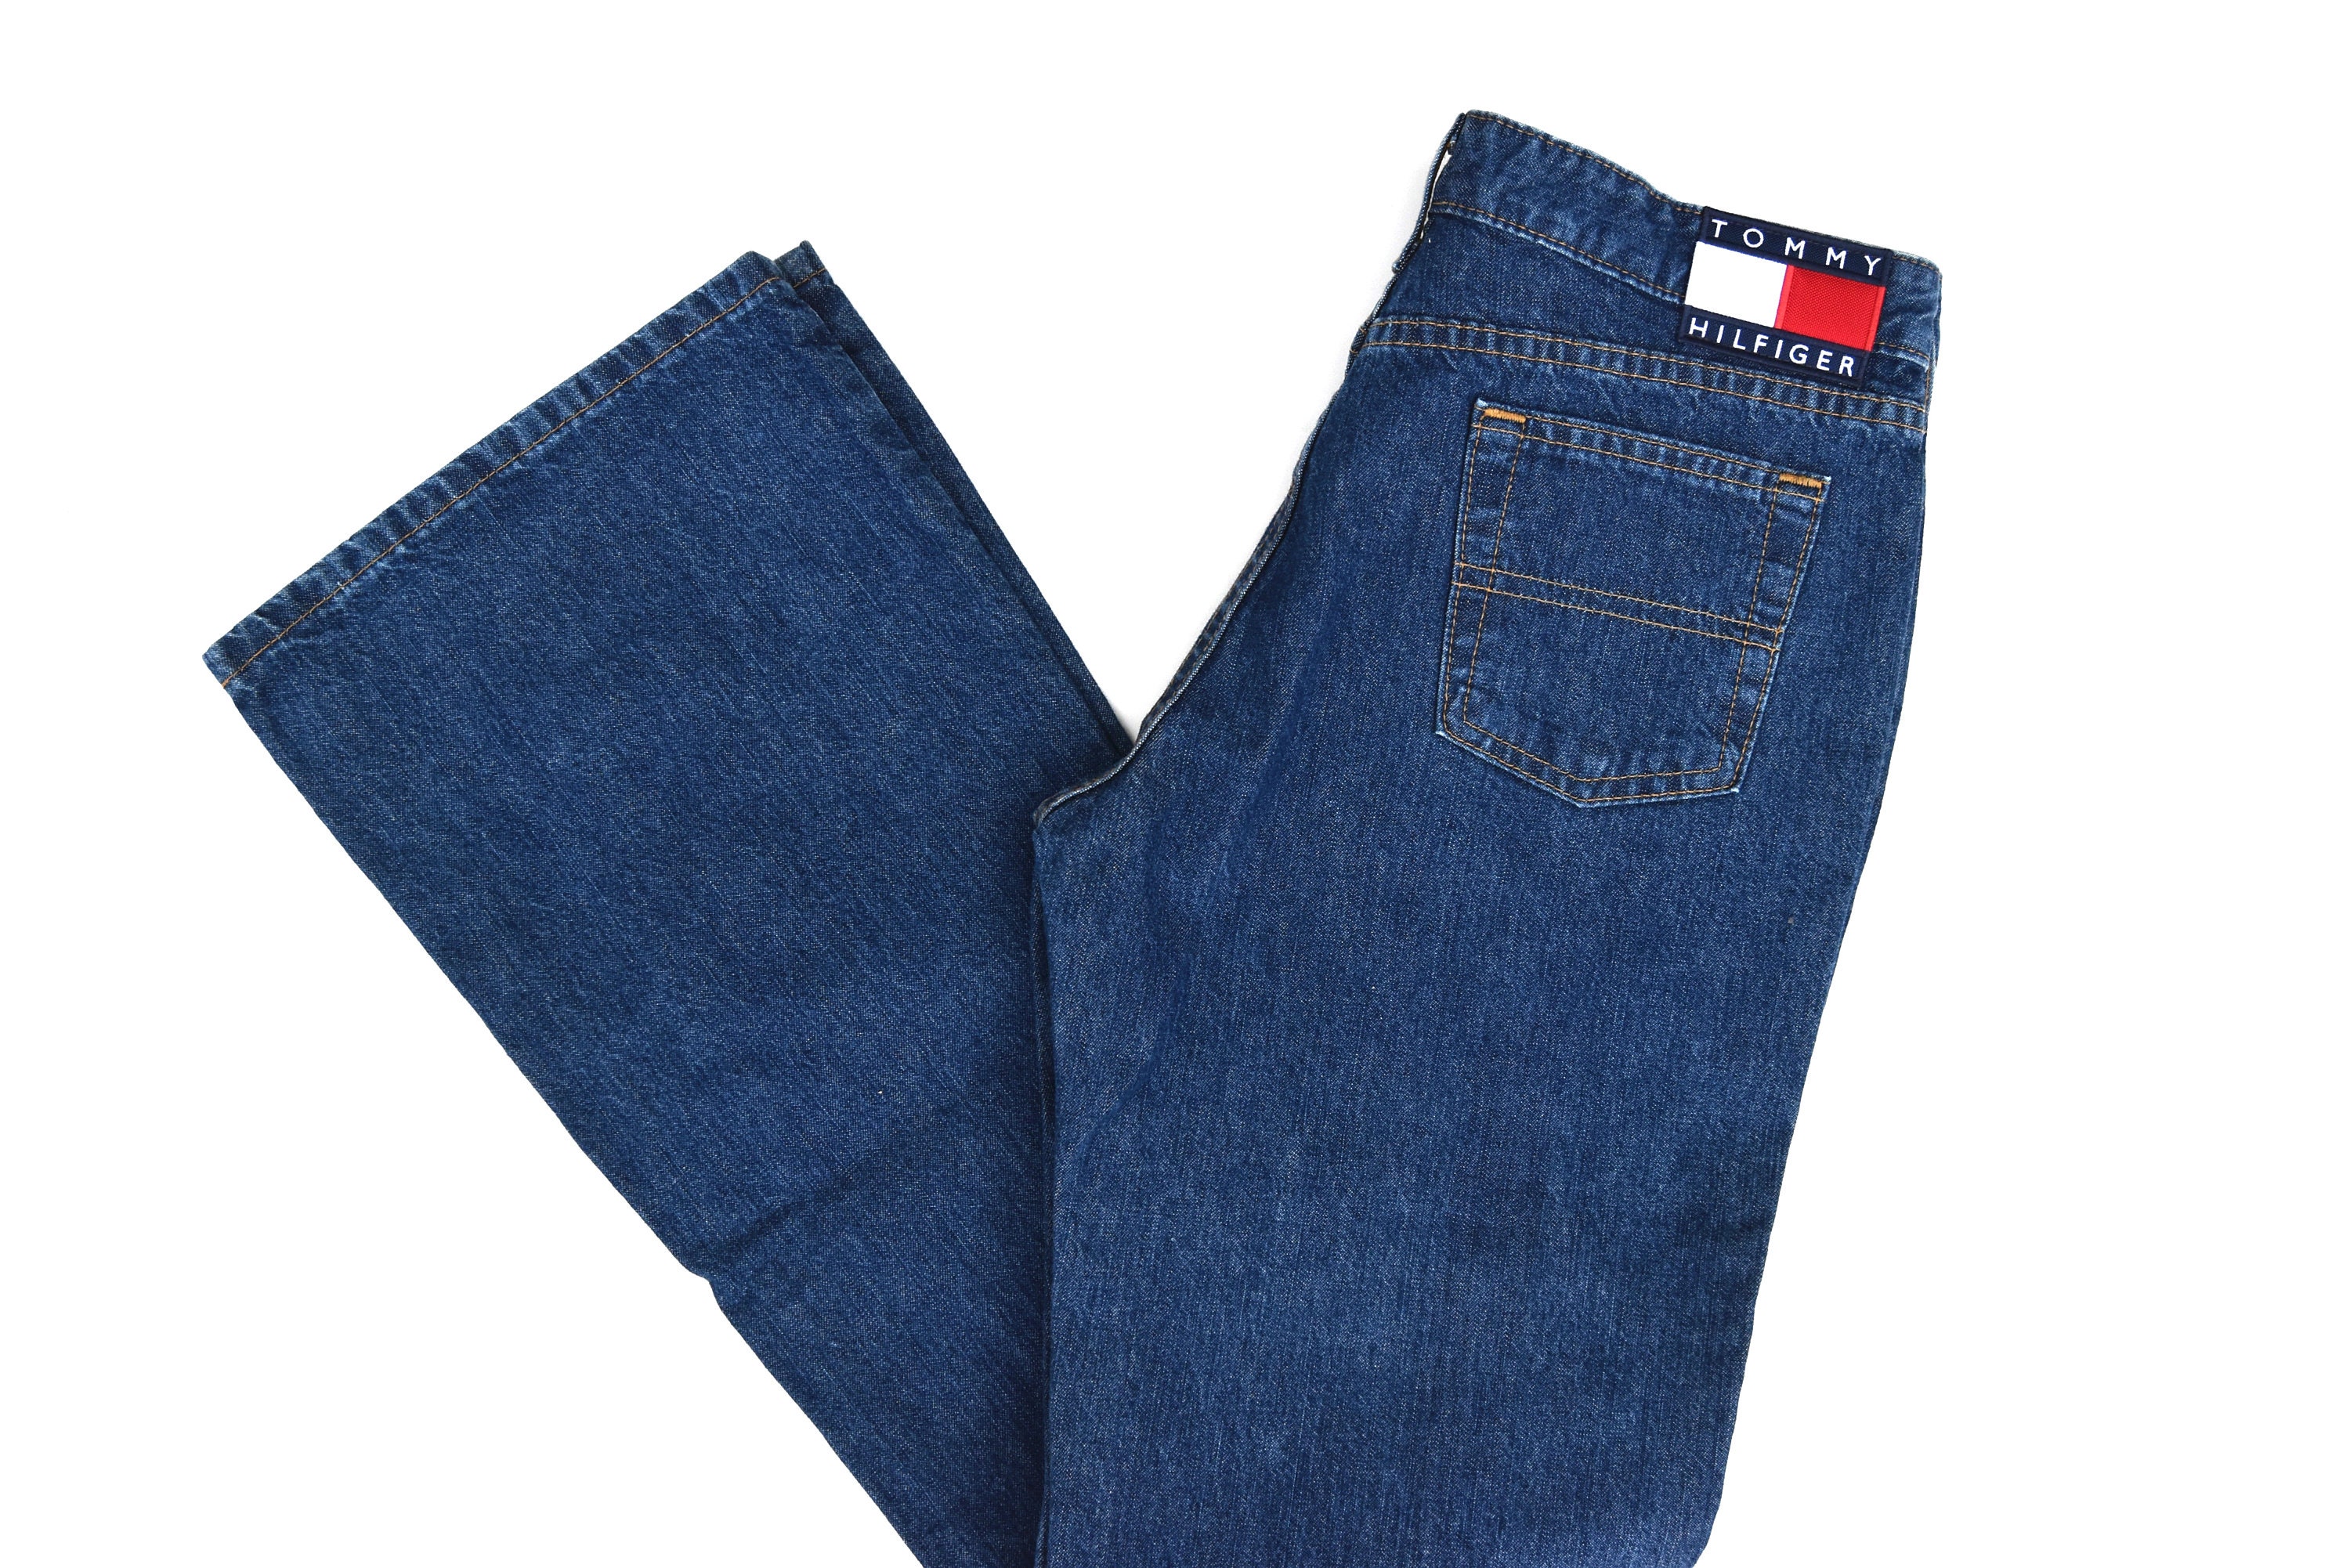 Vintage Euro Flare Tommy Hilfiger Jeans | High Waist | Medium Wash, Mid  weight Denim | Size 29 Inseam 32 | made in Canada